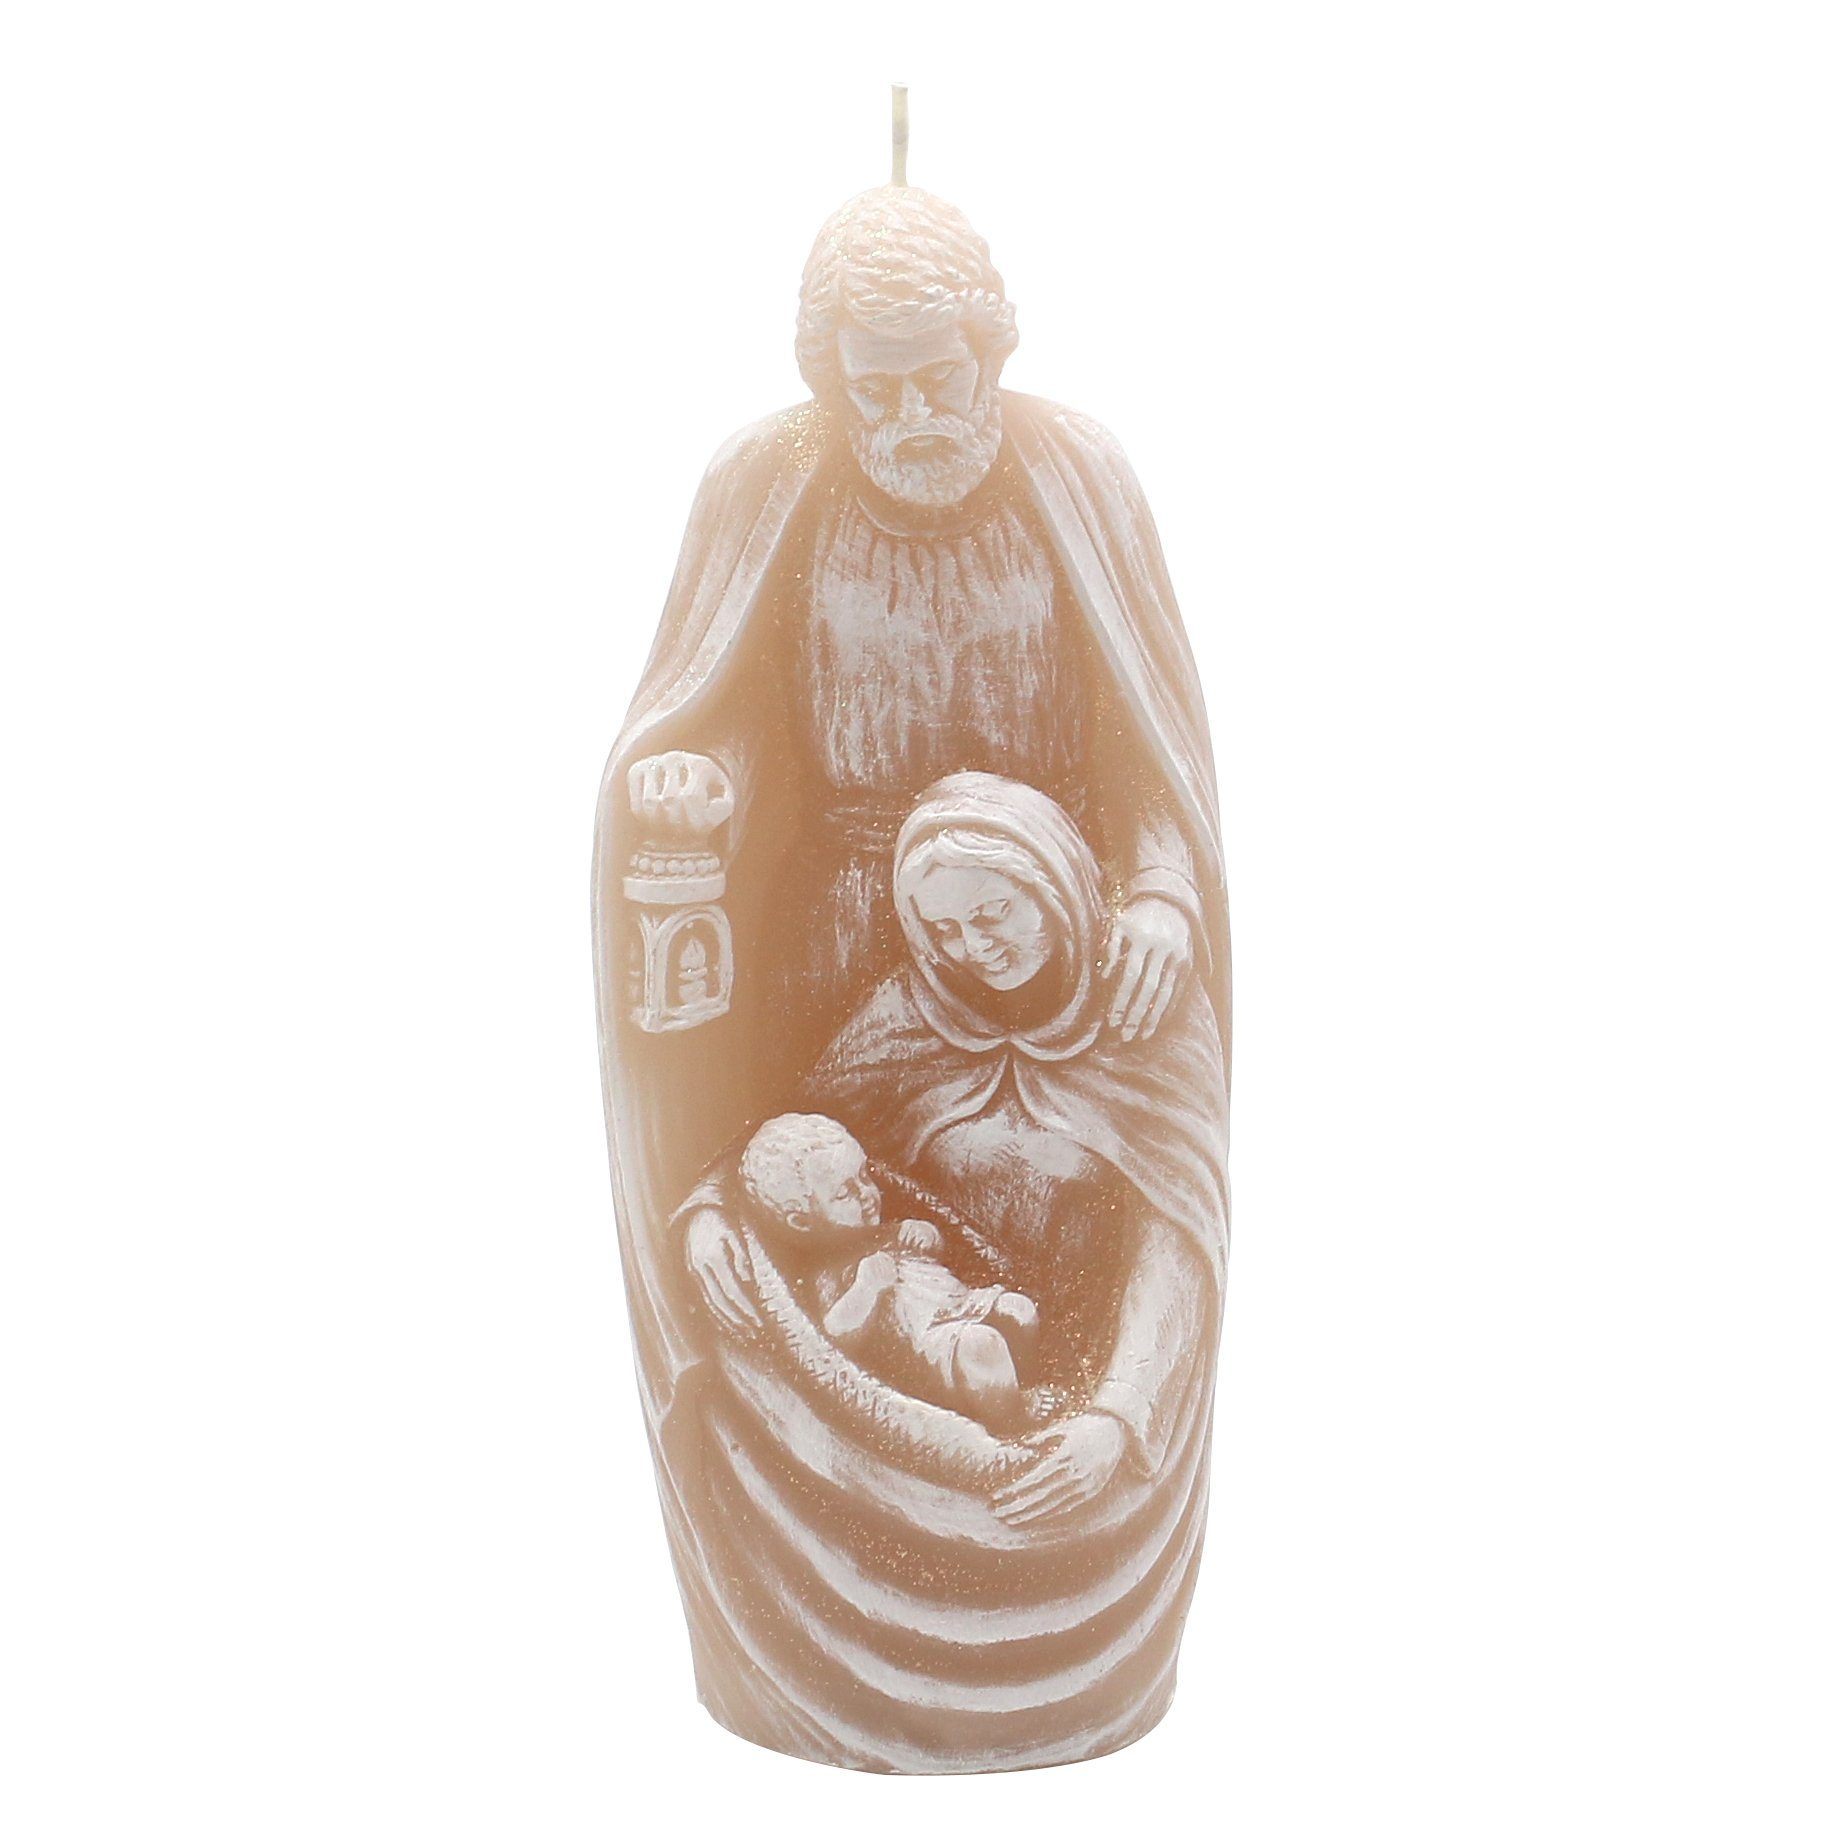 Dekohelden24 Adventskerze Hochwertige Kerze als Heilige Familie in 4 verschieden Farben (1 Stück, 1-tlg)